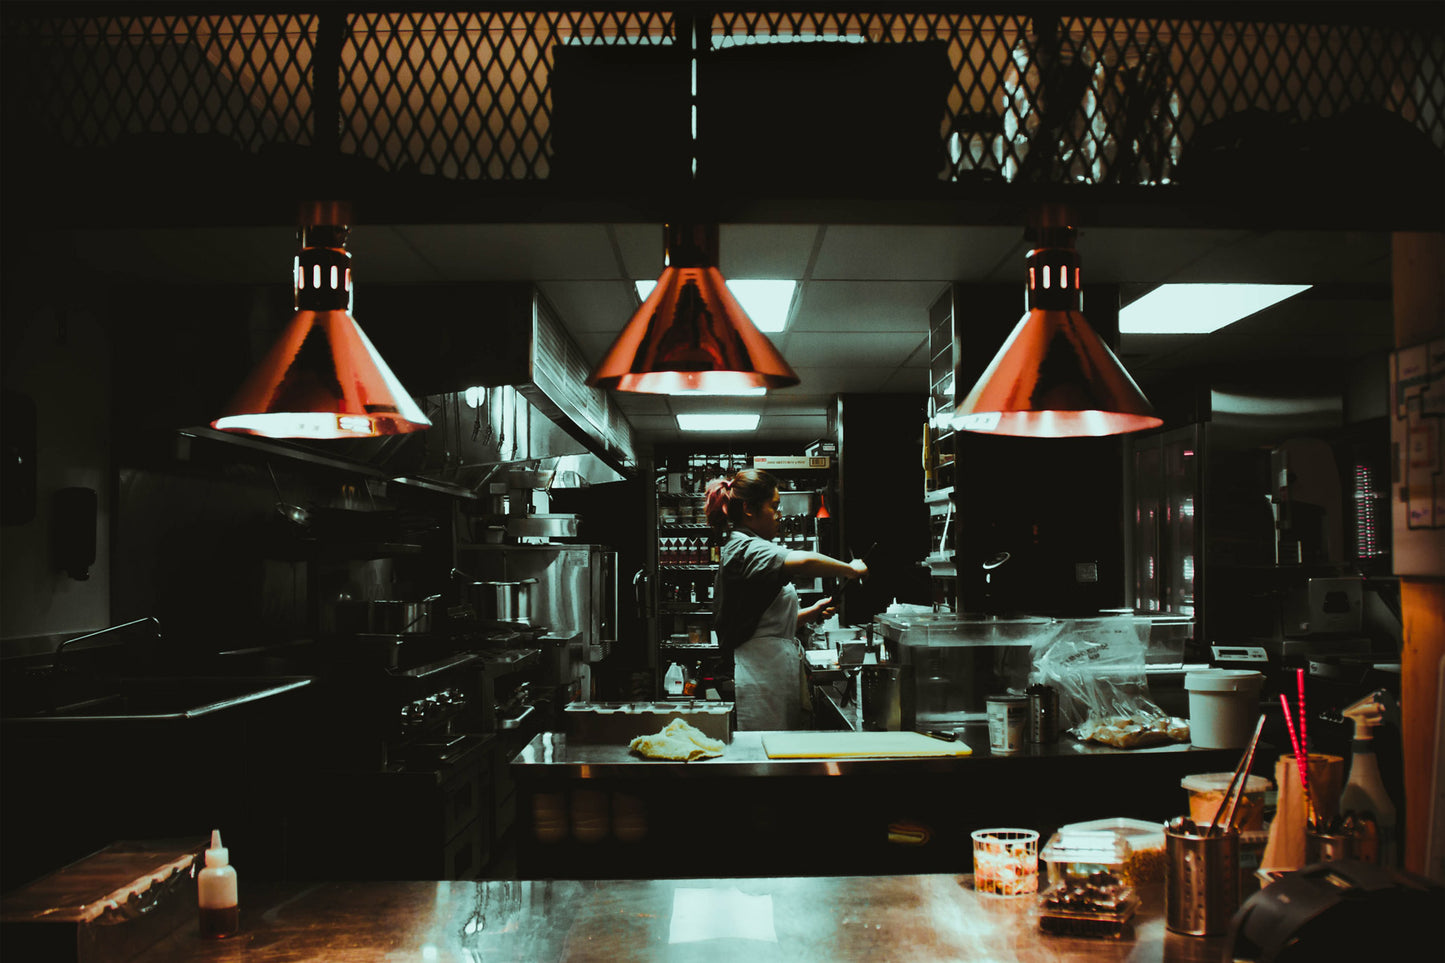 Dark kitchens: qué son y por qué podrían ser el futuro de los restaurantes